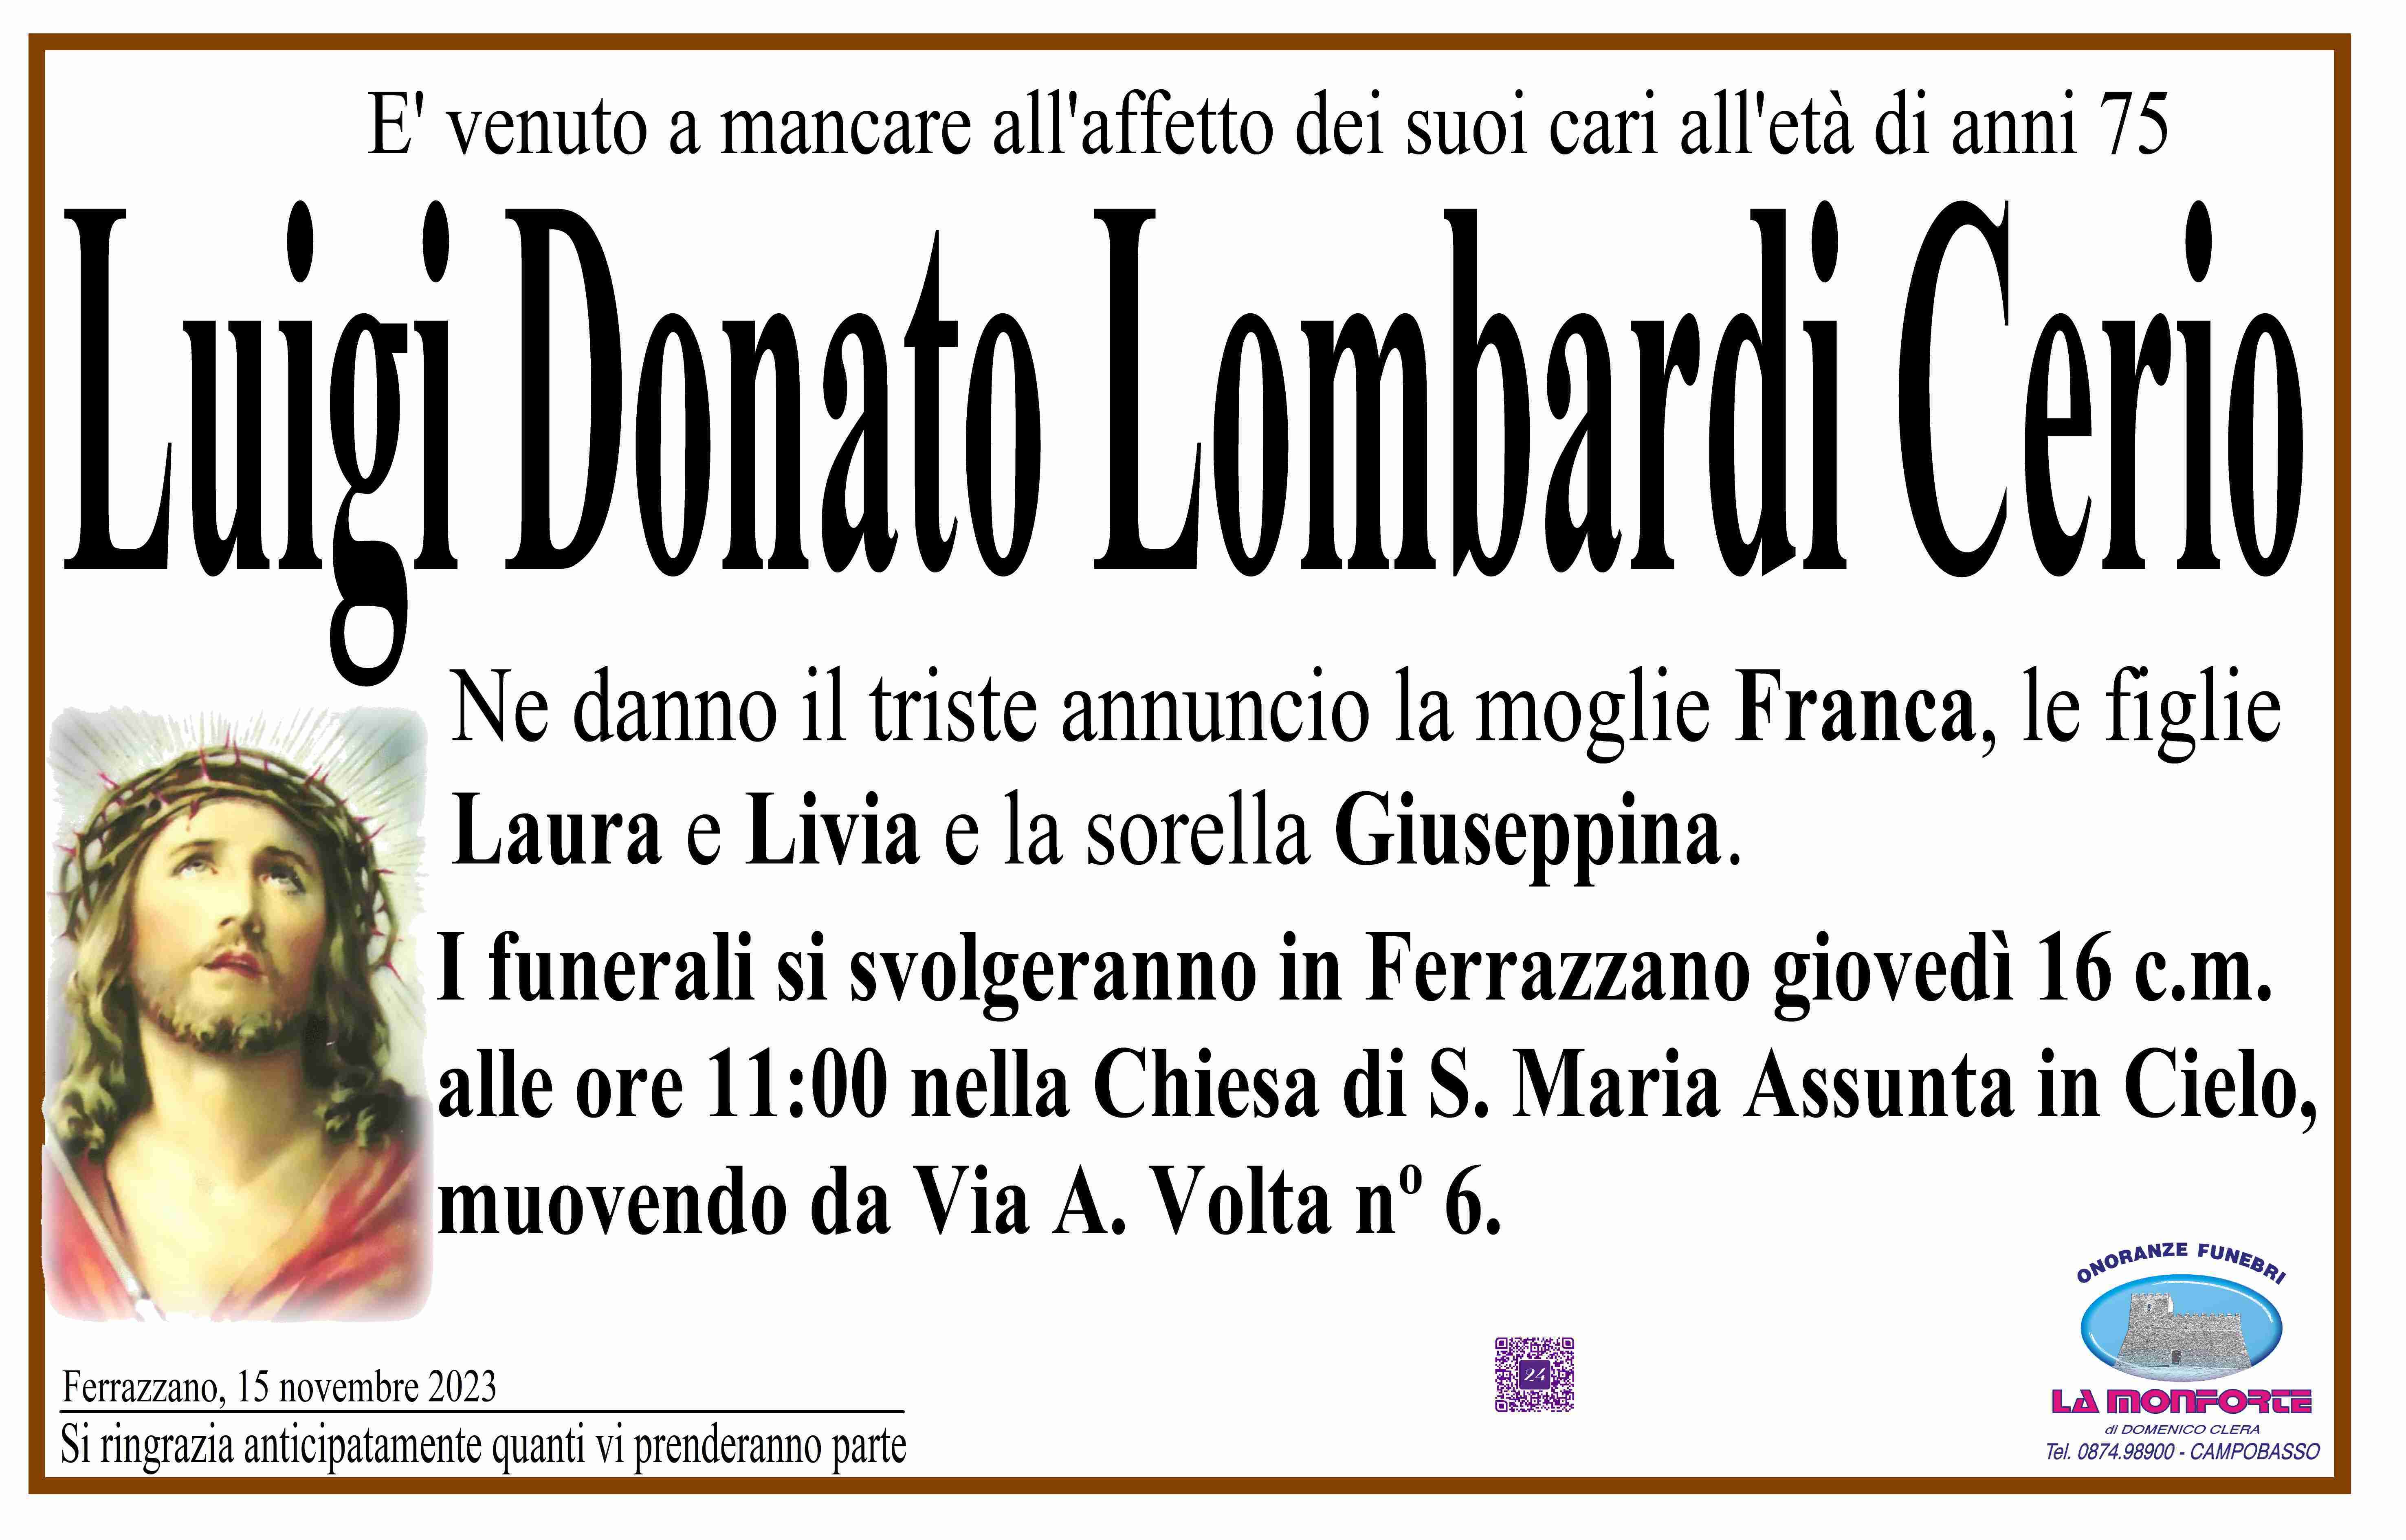 Luigi Donato Lombardi Cerio